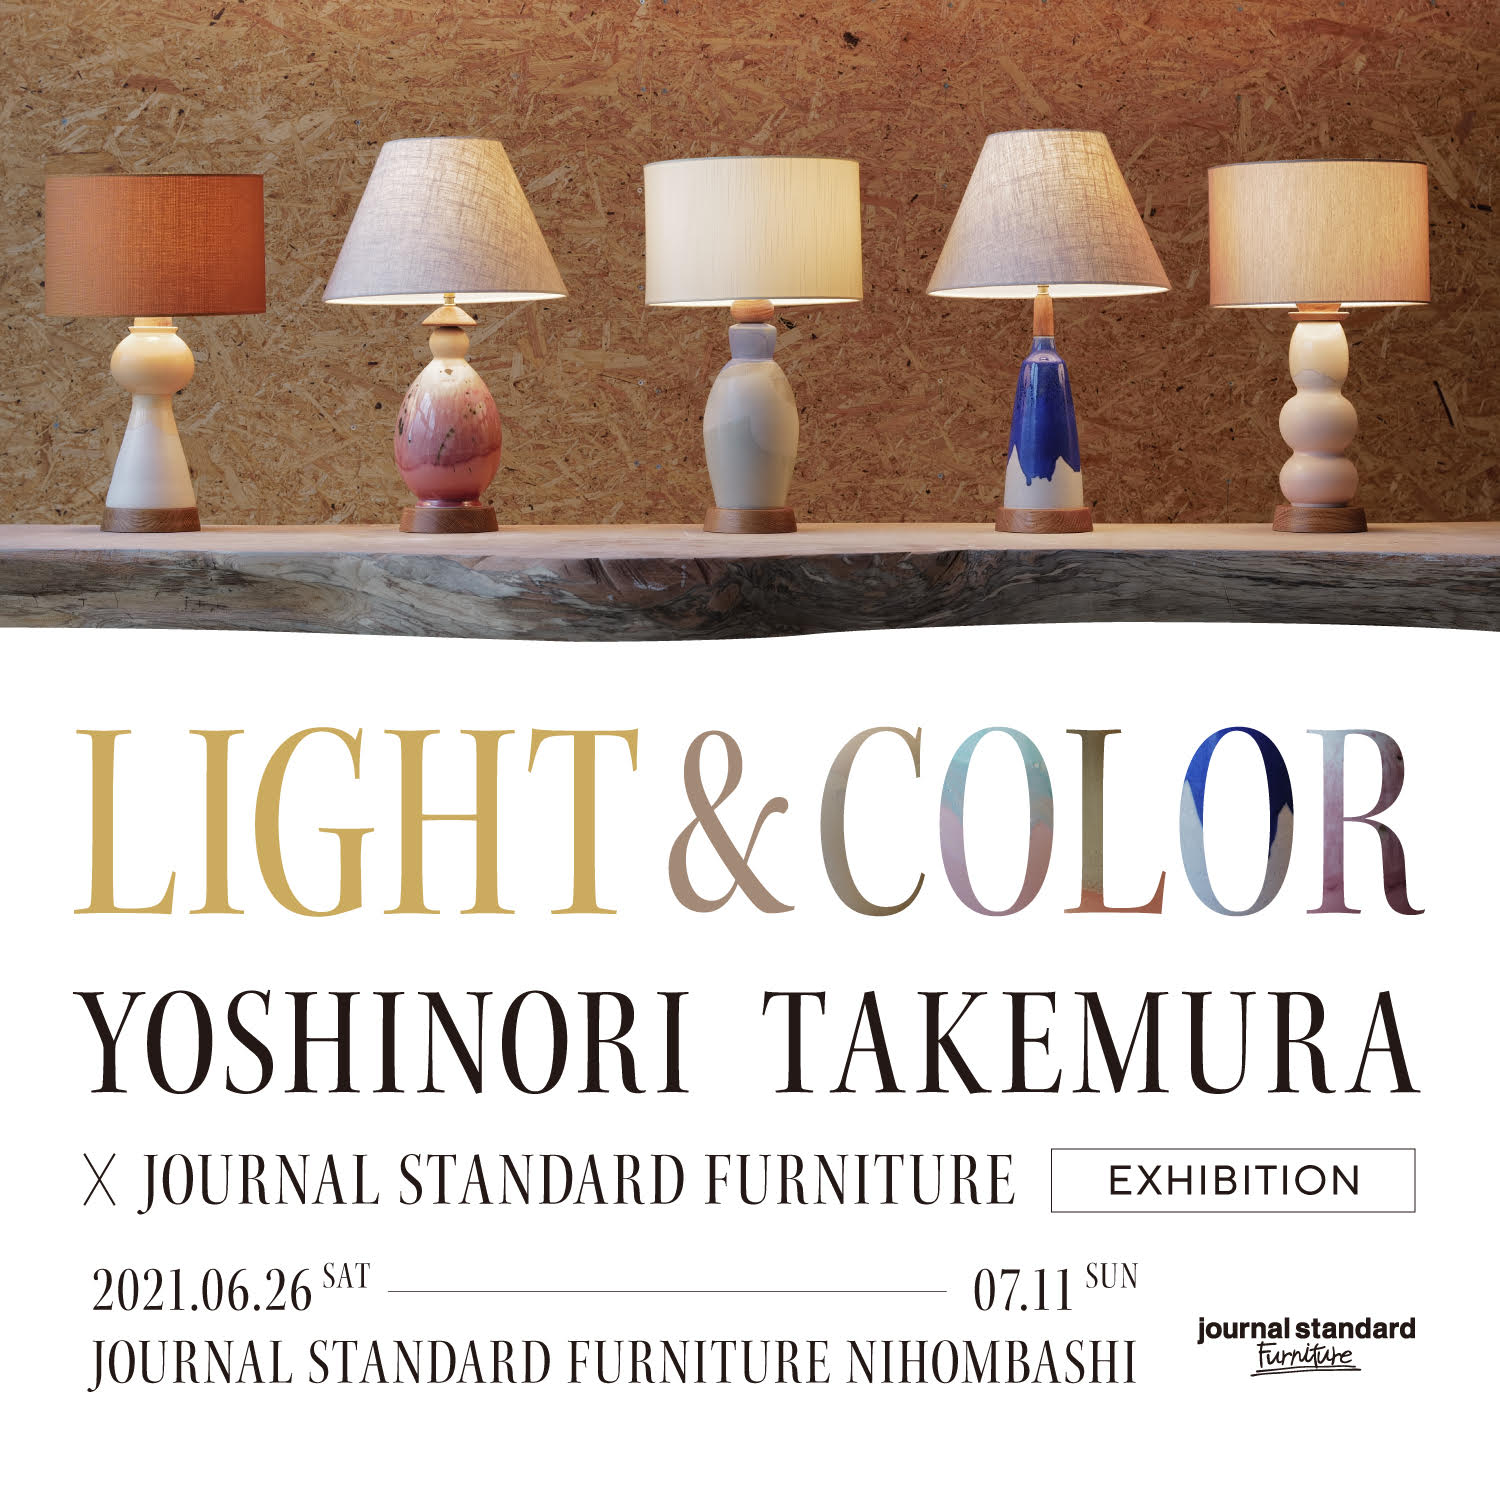 yoshinori-takemura-x-journal-standard-furniture1-2-2